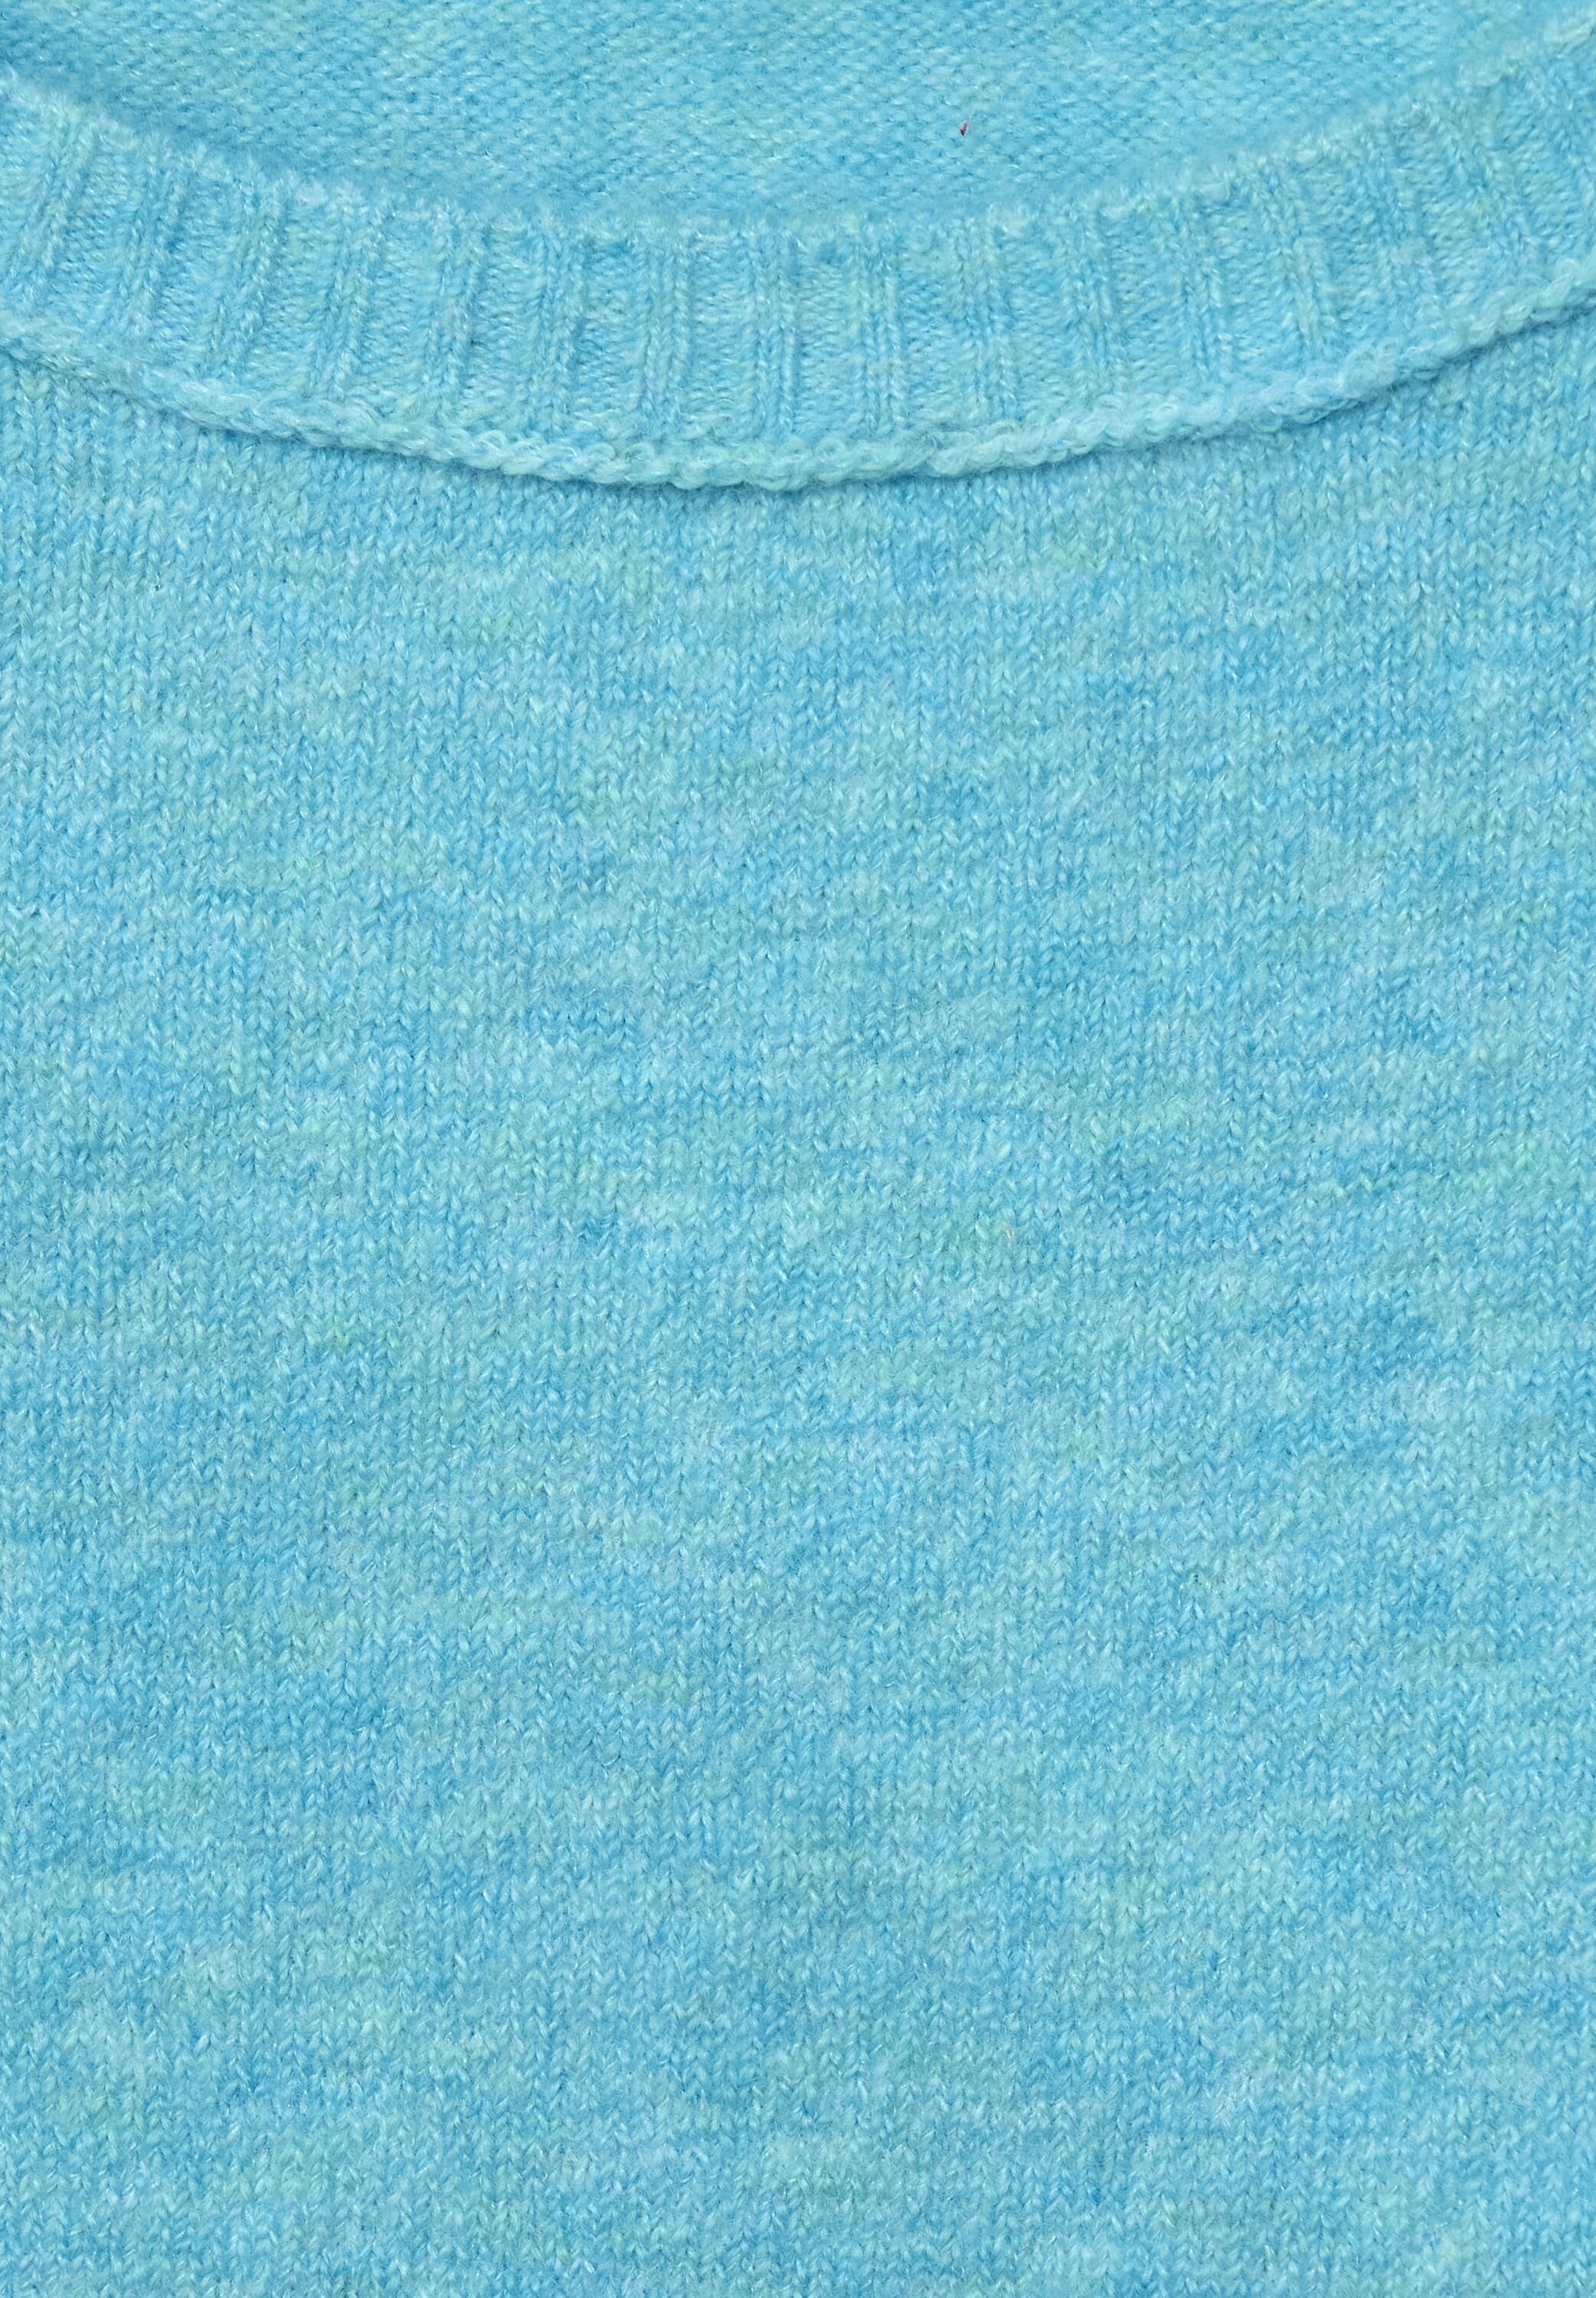 Pullover in Cecil Aquatic Locker geschnitten Rundhalspullover (1-tlg) Cecil Cosy Melange Blue